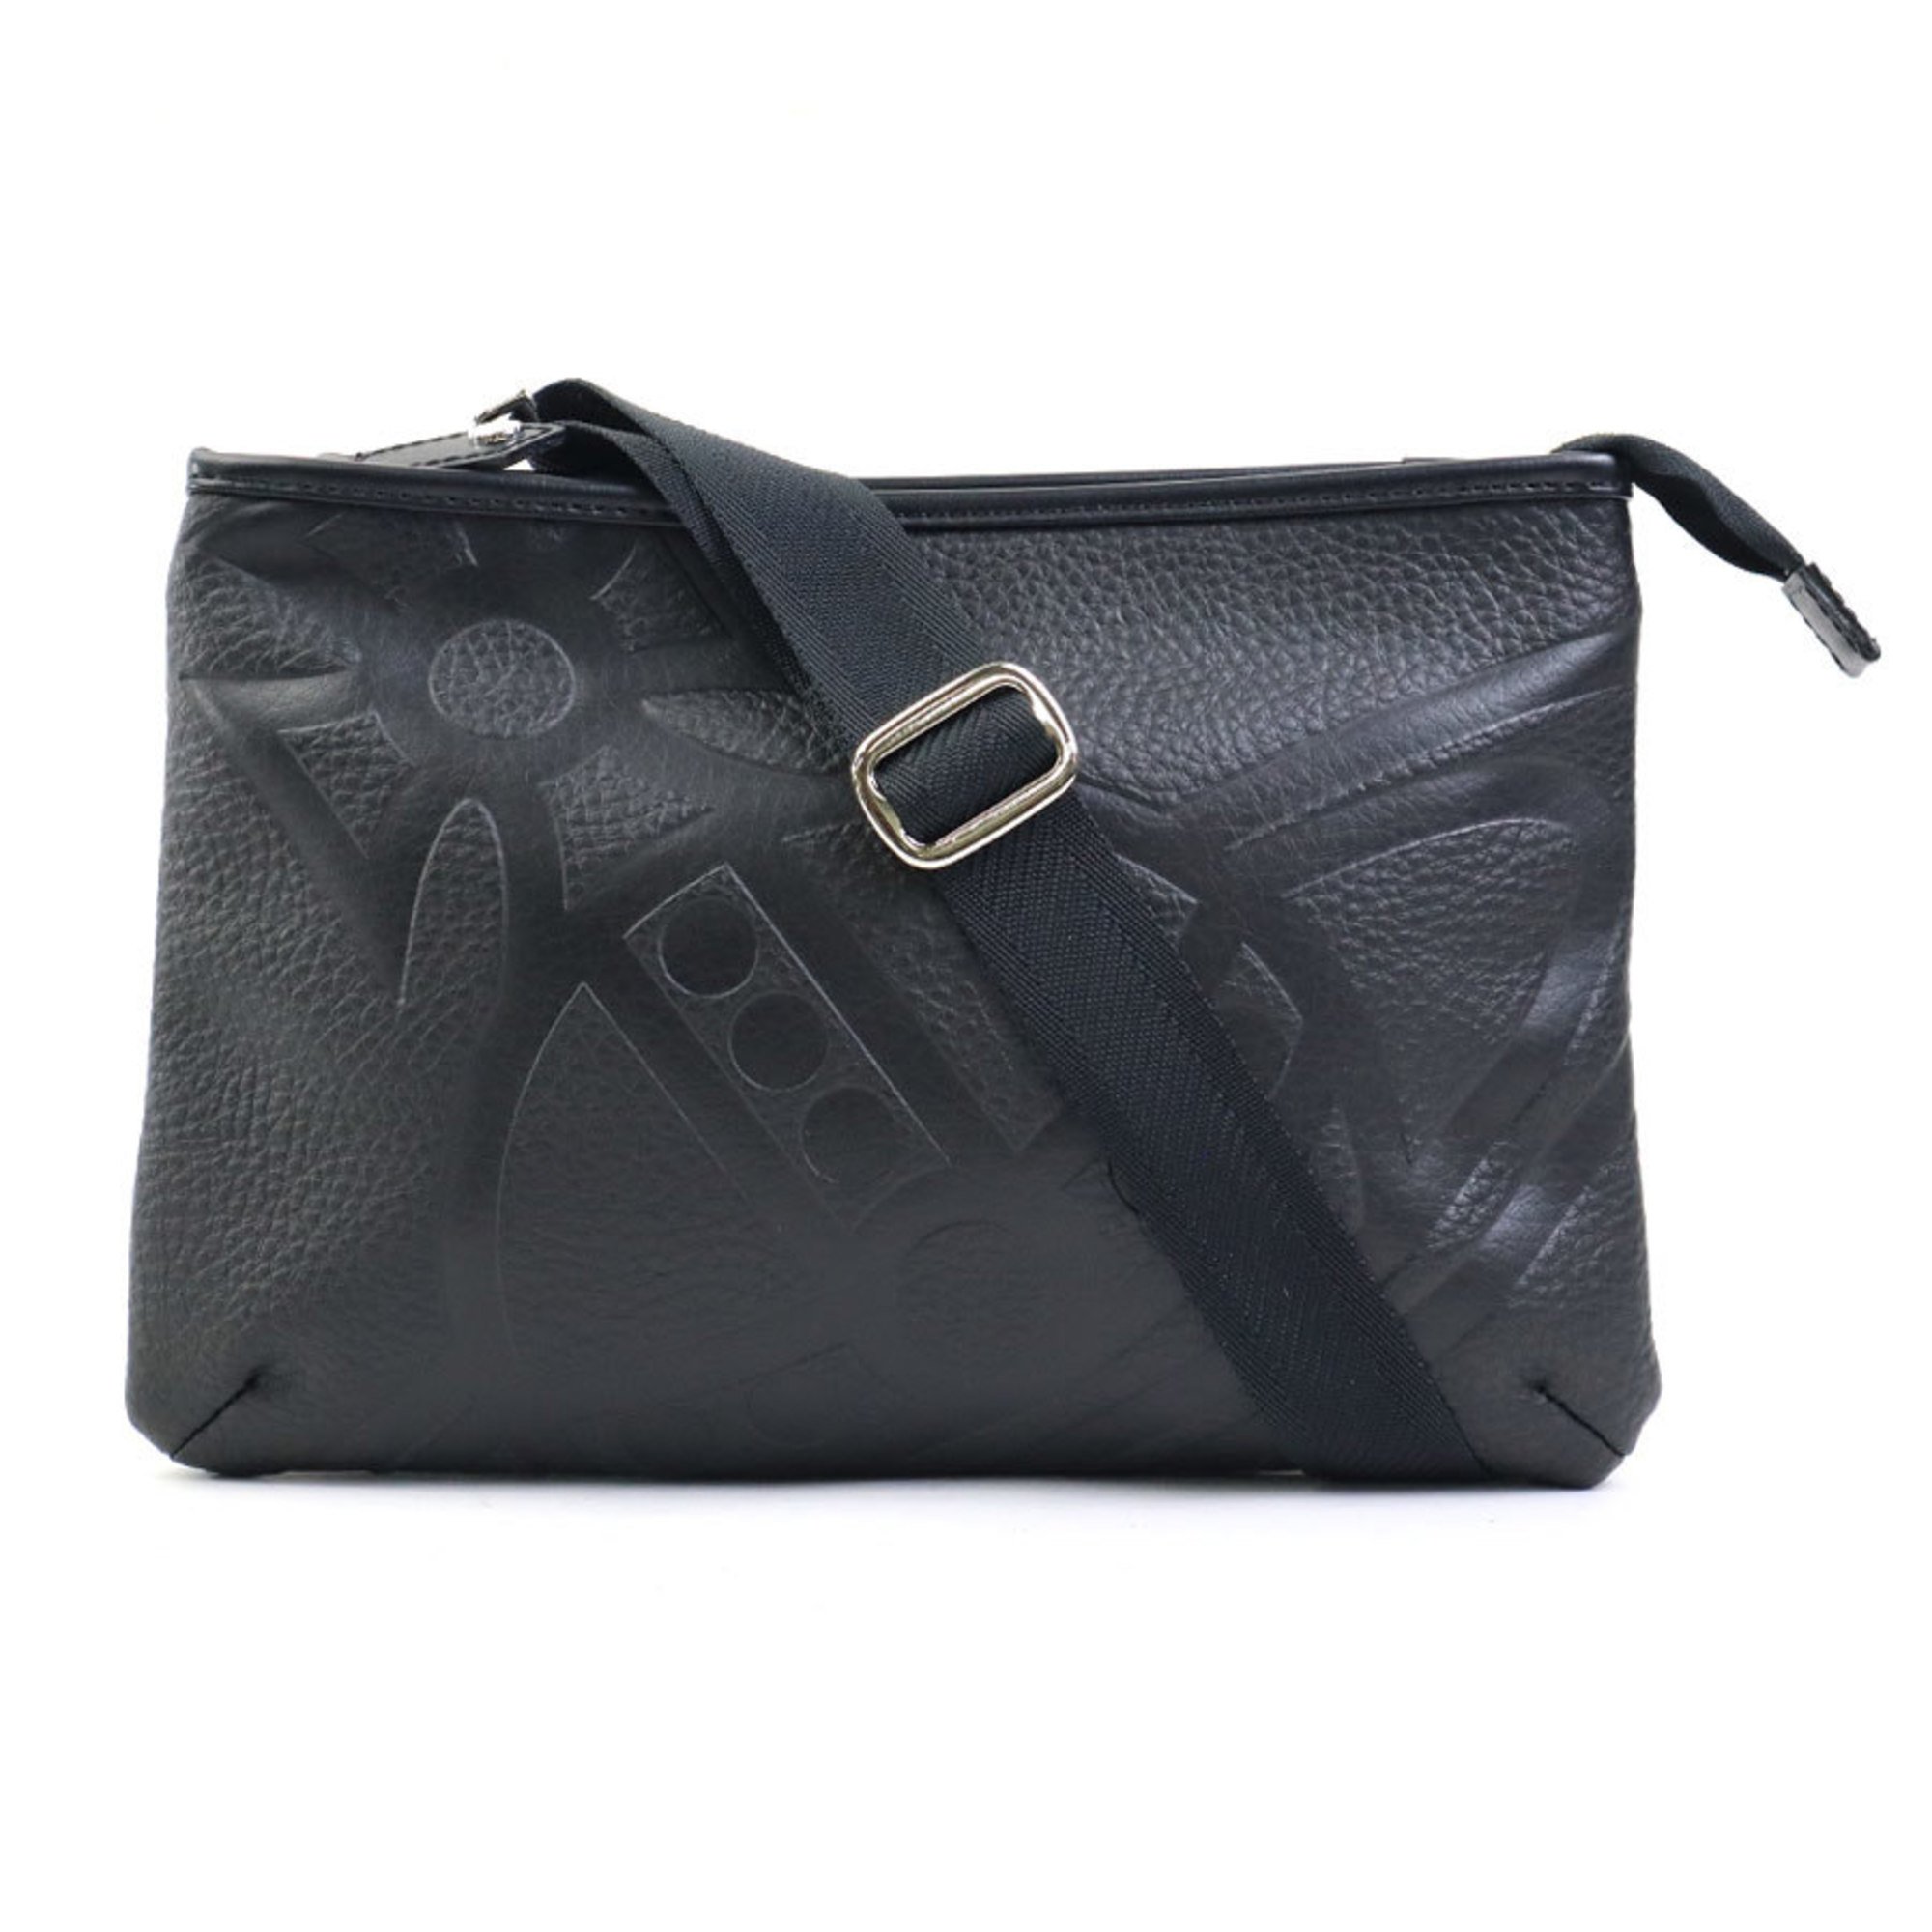 Vivienne Westwood shoulder bag leather black men's women's h30345f